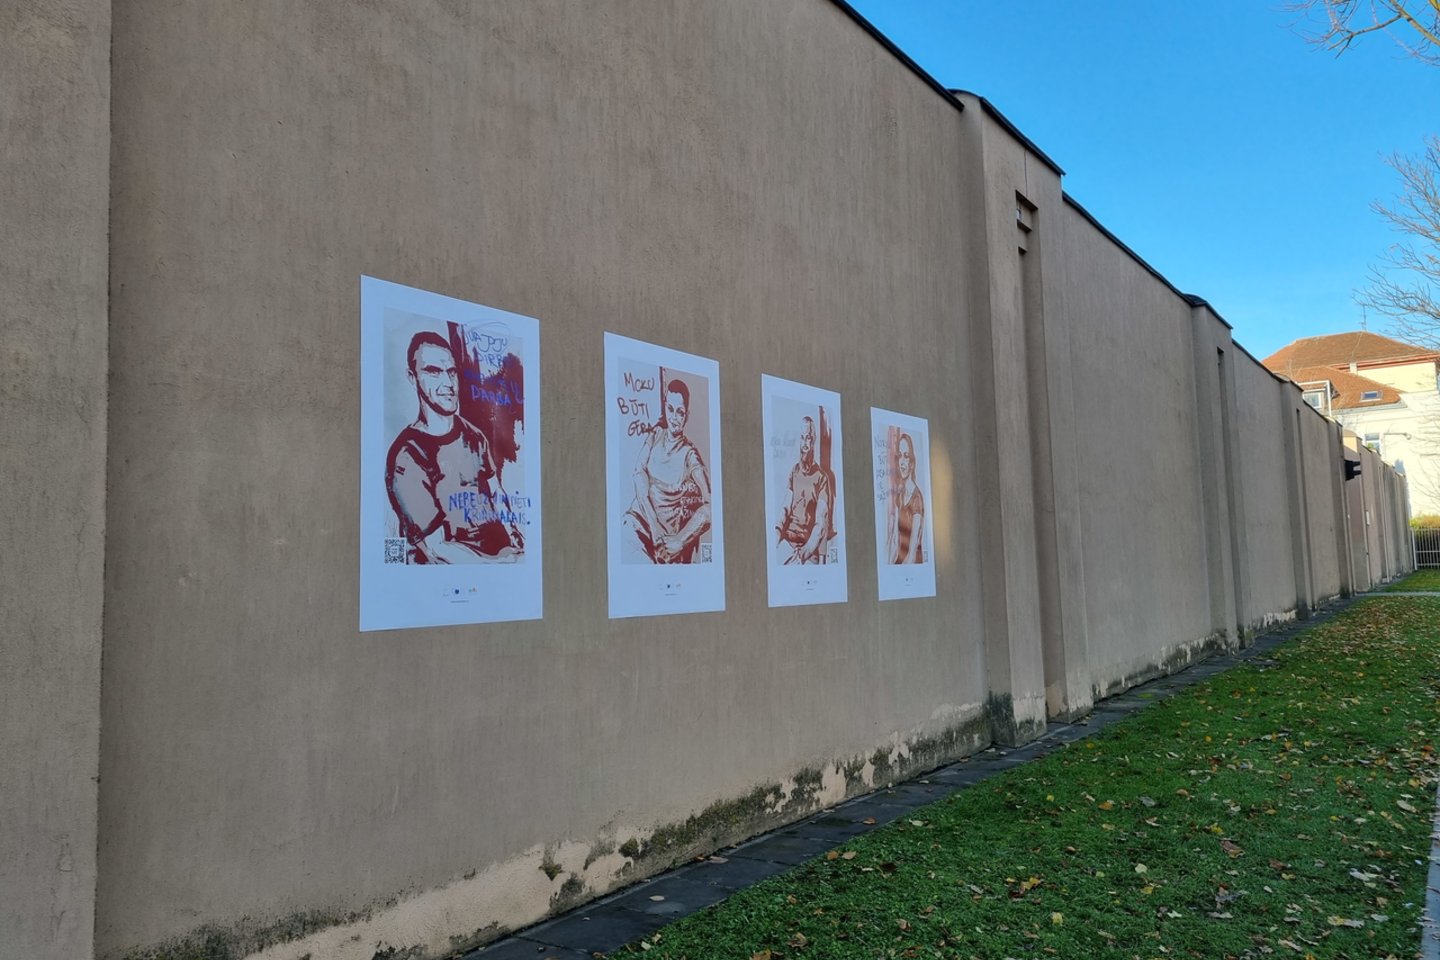 Ant Kauno tardymo izoliatoriaus sienos nupiešti nuteistųjų portretai.